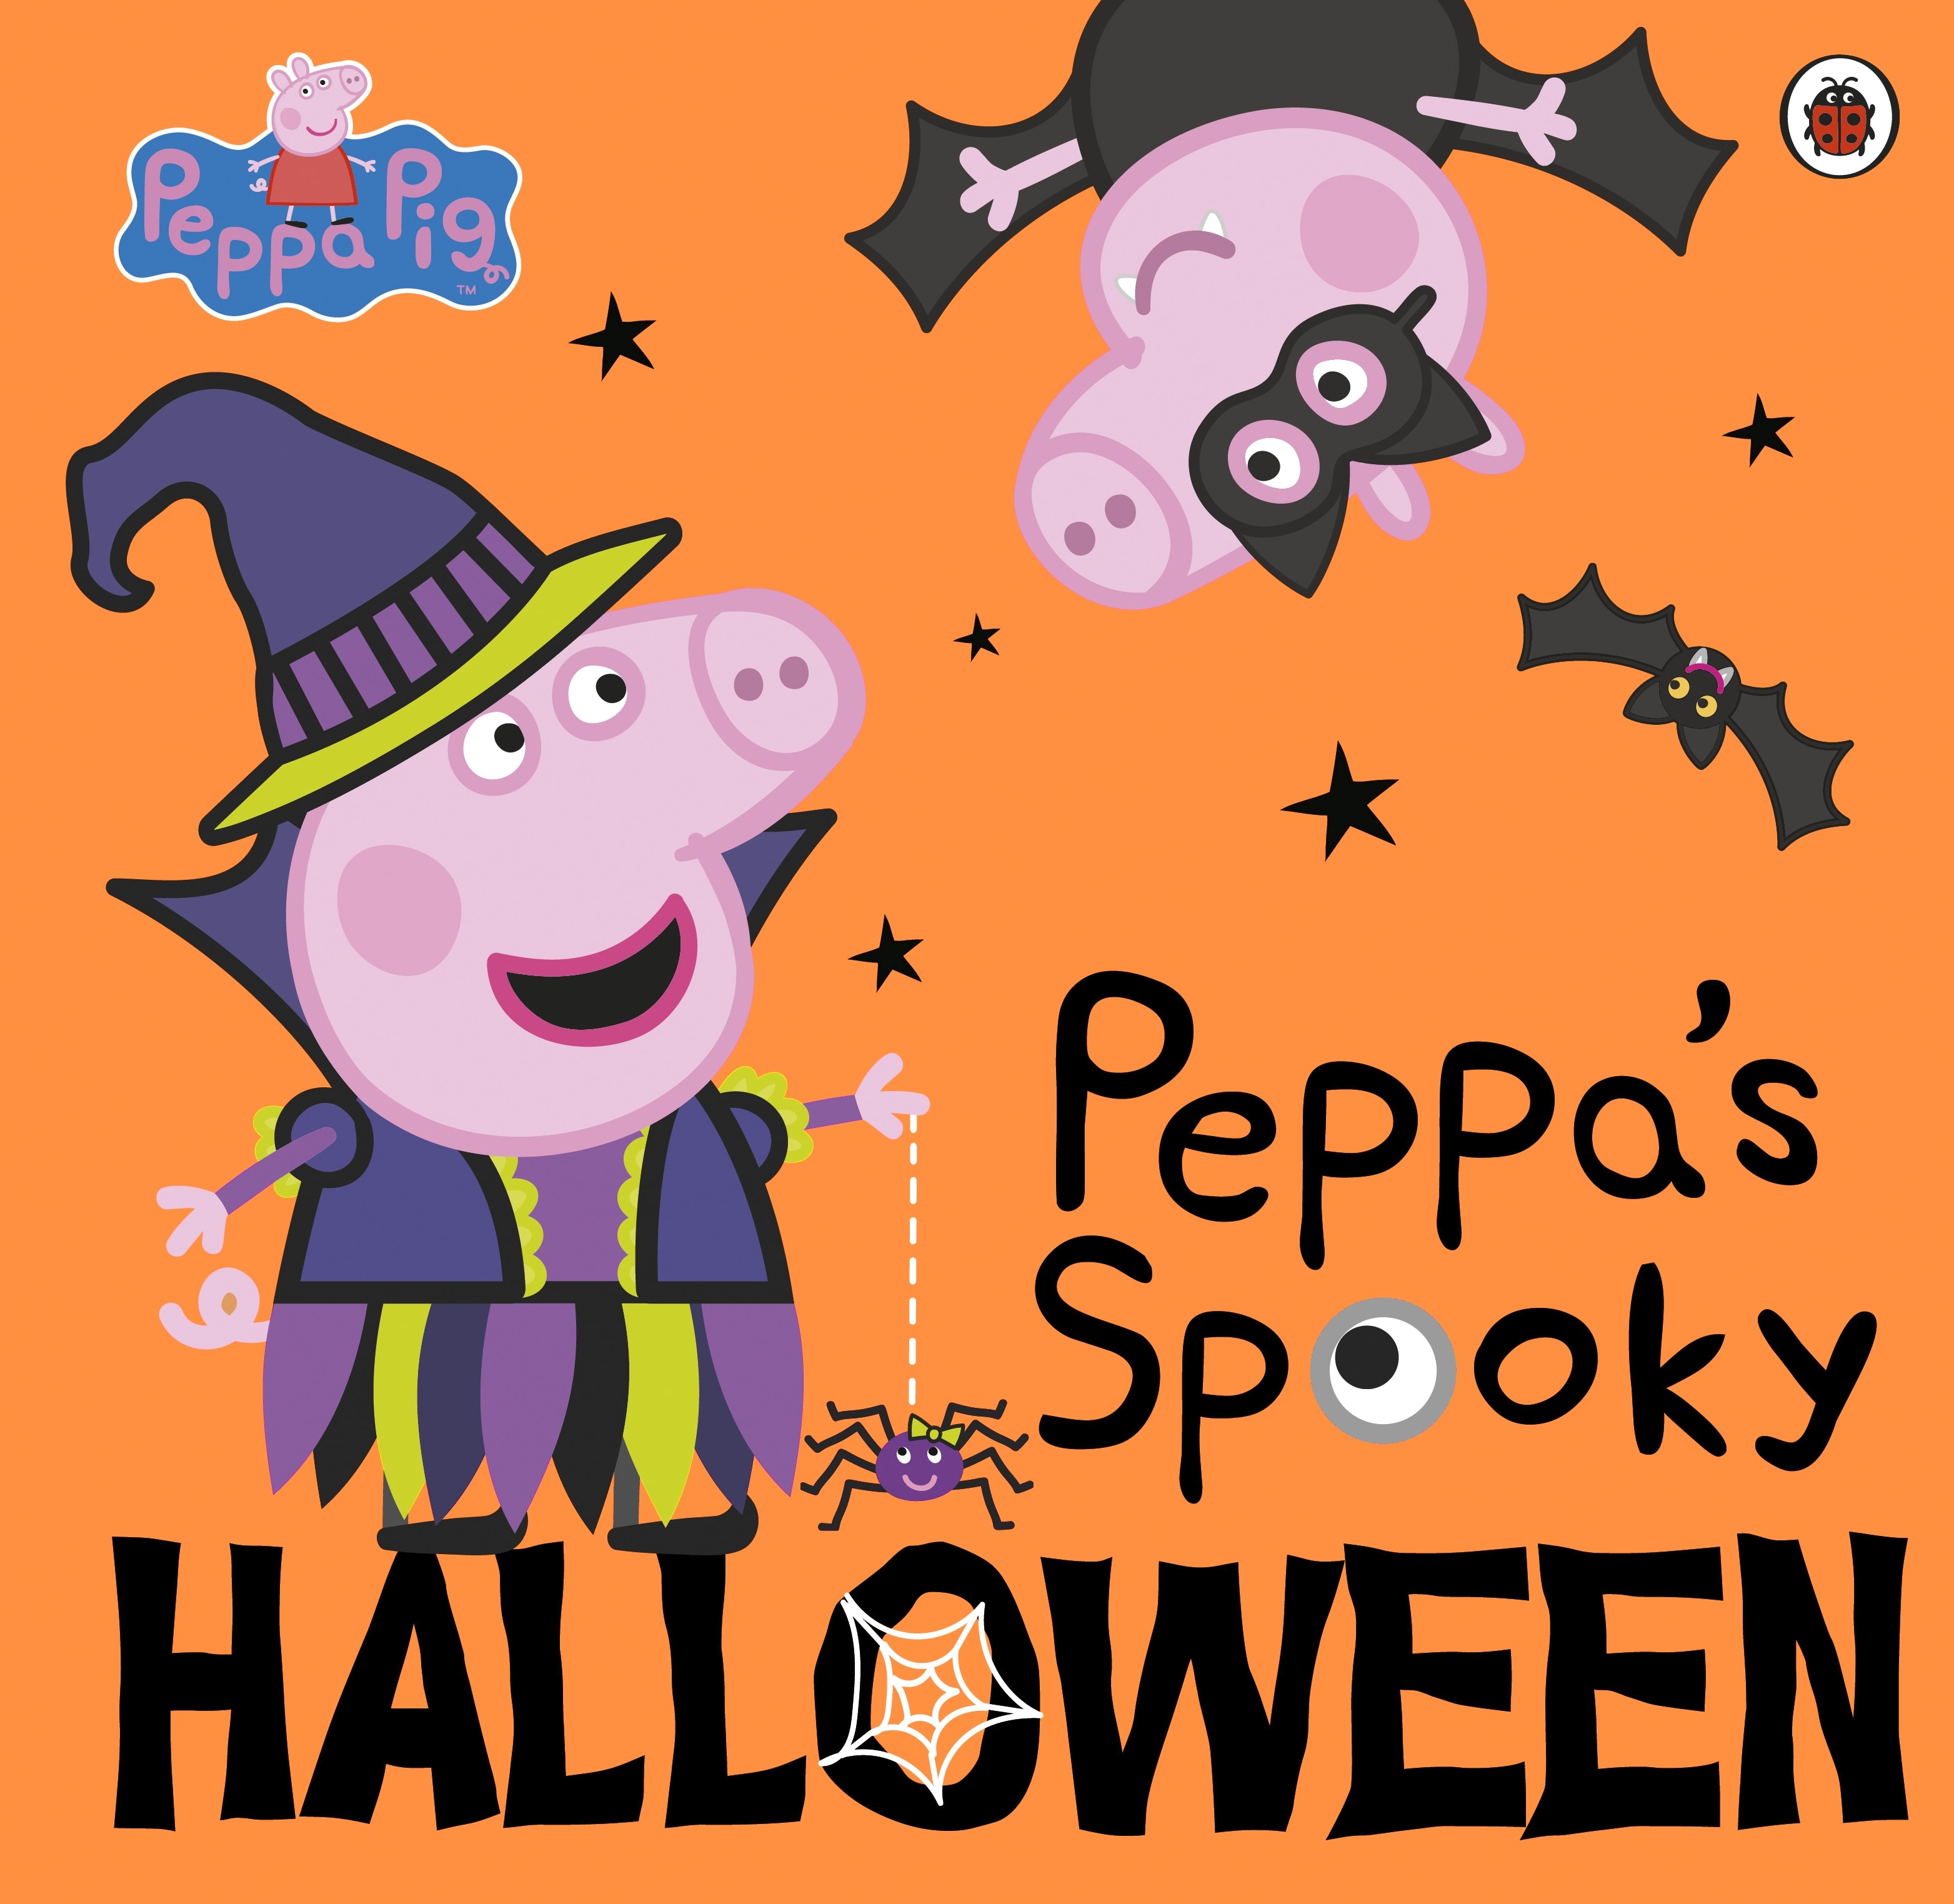 Book “Peppa Pig: Peppa's Spooky Halloween” by Peppa Pig — September 3, 2020